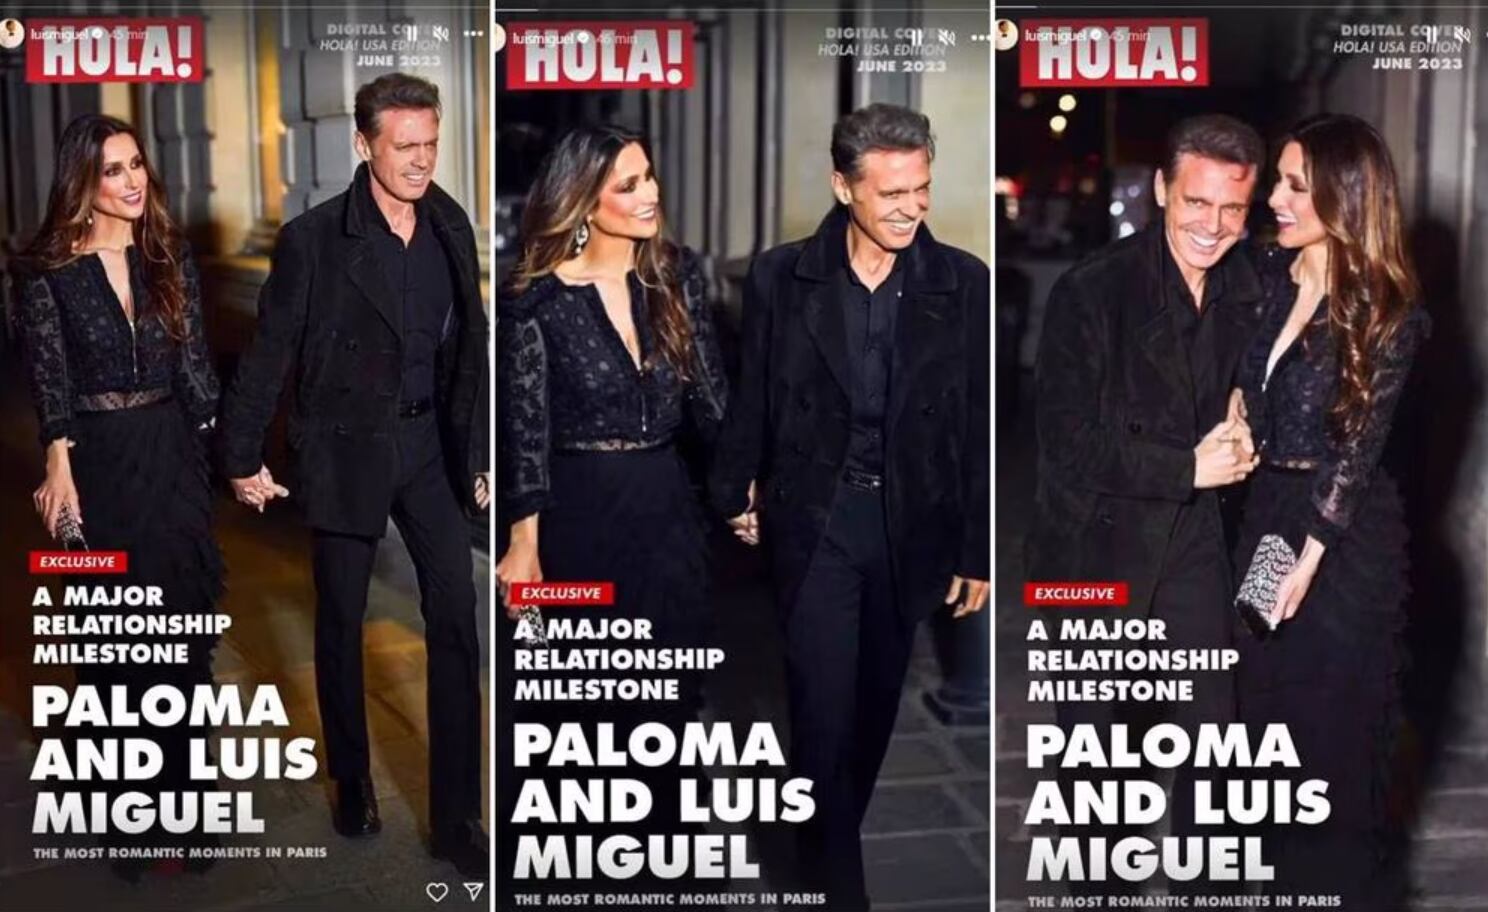 Luis Miguel y Paloma Cuevas asistieron a una boda en París y 'enloquecieron' a los paparazzi. 